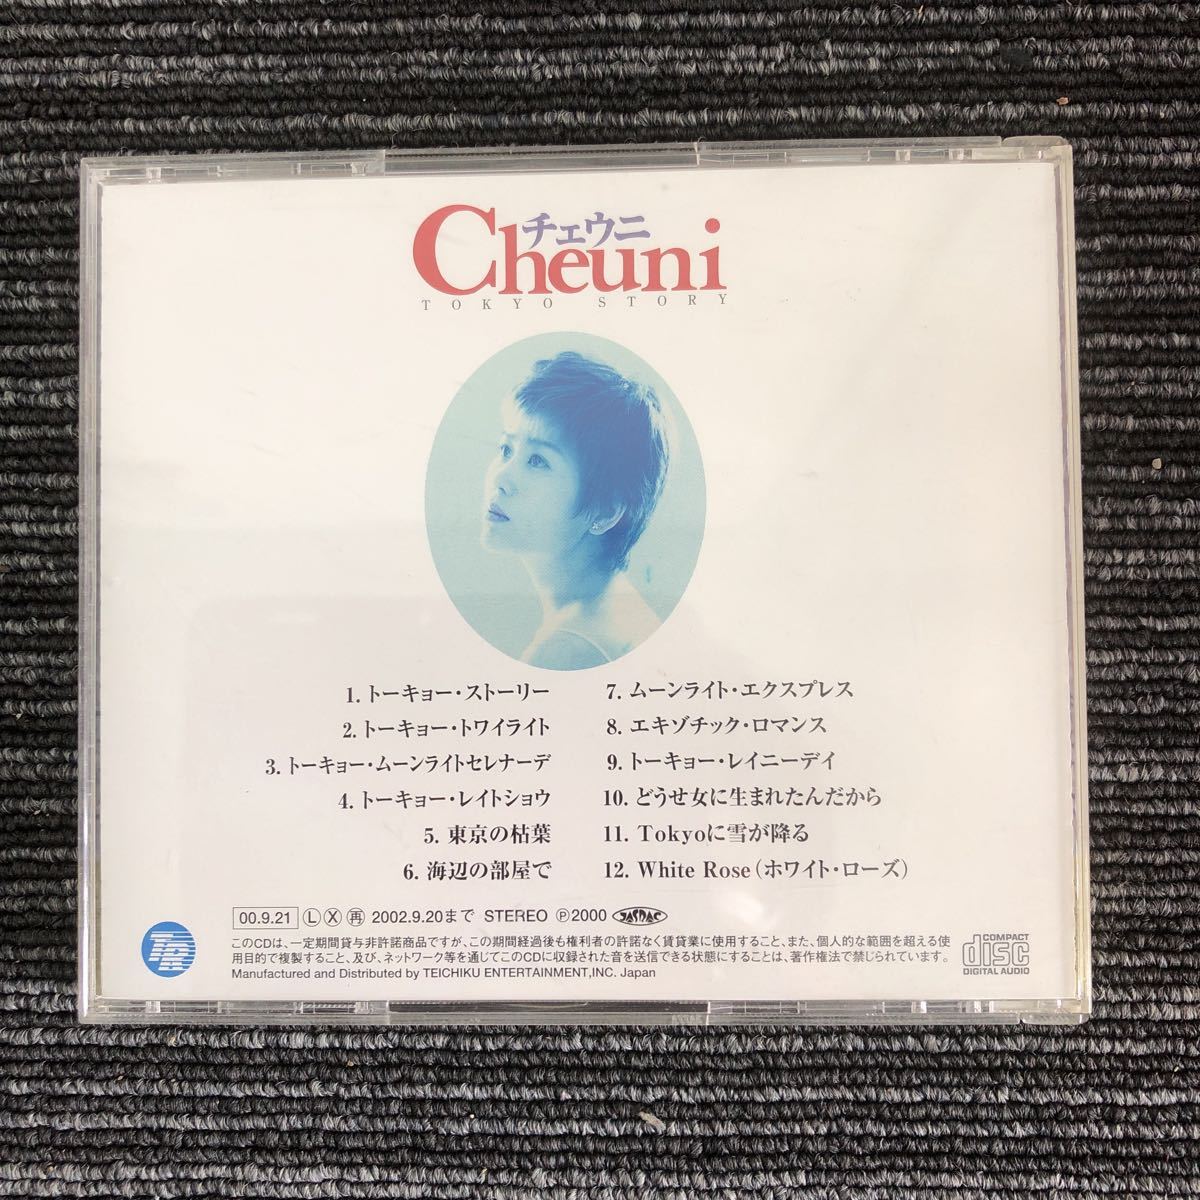 k[.2]CD che морской еж Cheuni альбом to-kyo-* -тактный - Lee музыка 2000 год Junk текущее состояние 